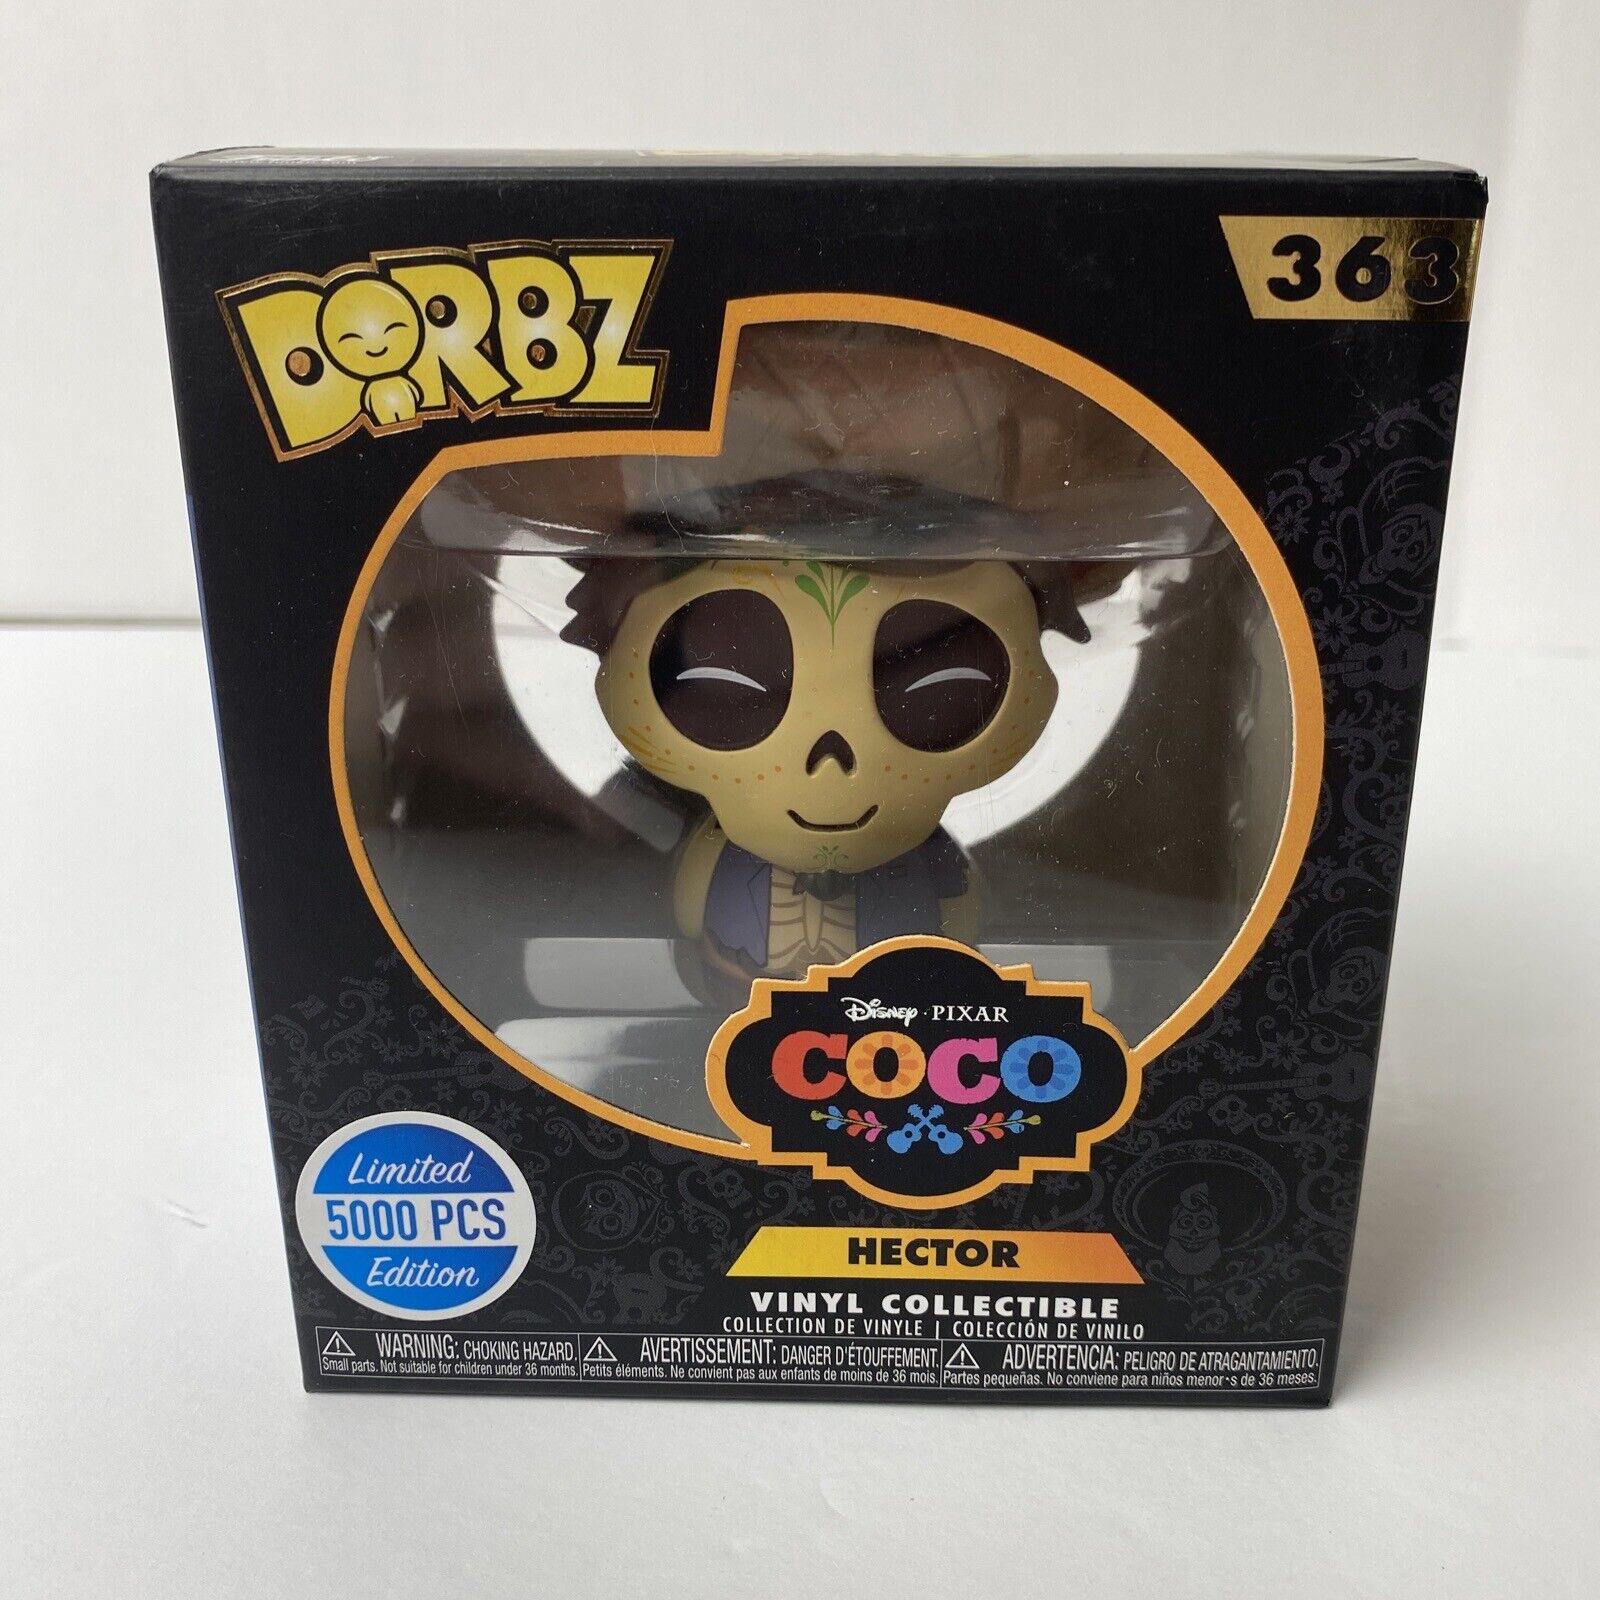 Funko Dorbz Disney Pixar Coco #363 Hector 5000 Pcs Limited Vinyl Collectible